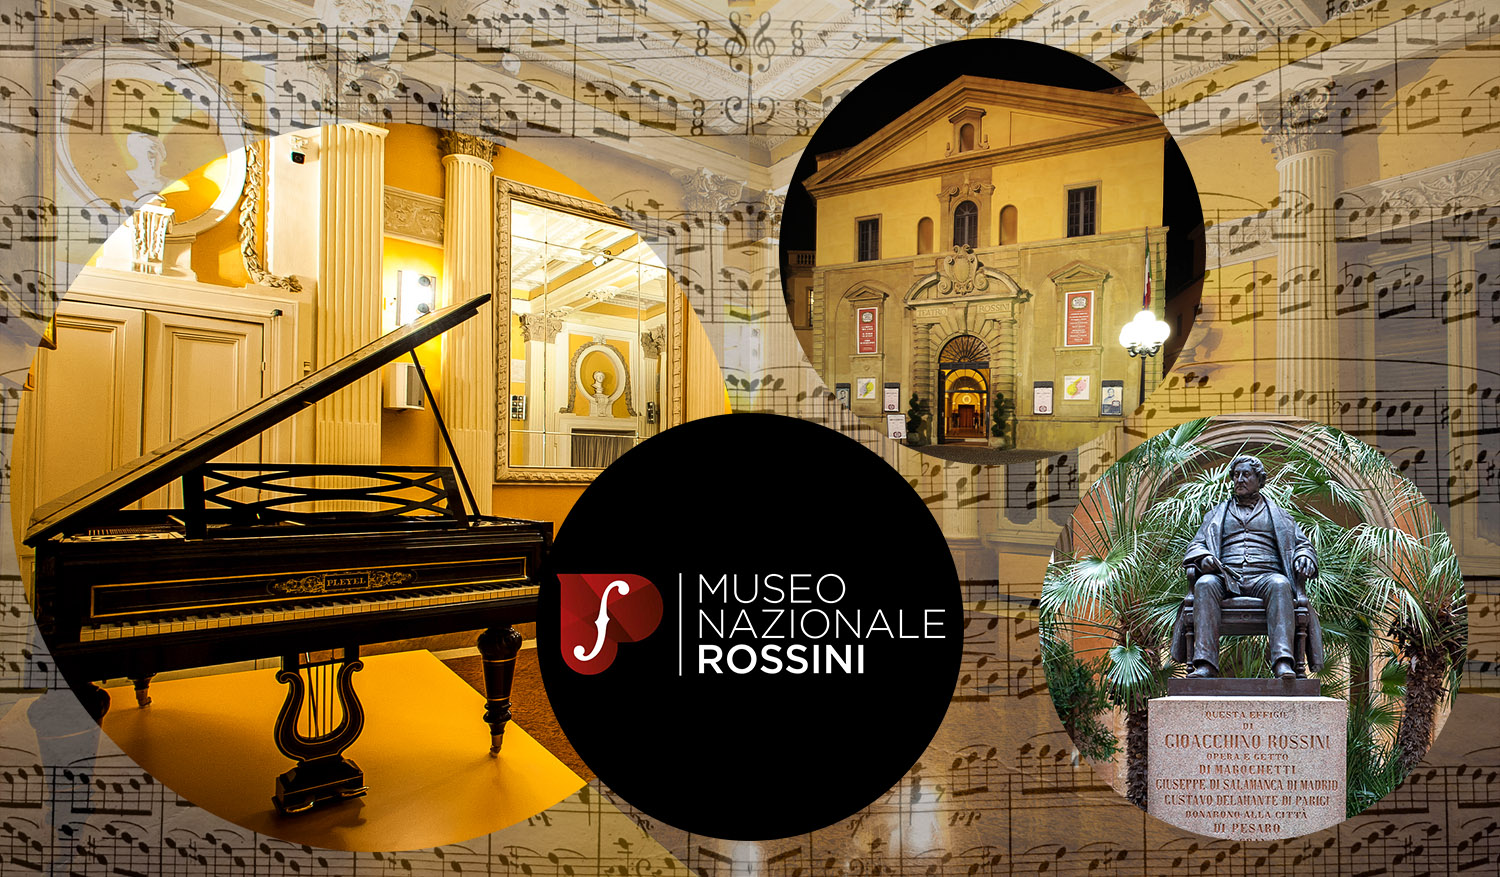 Il Museo Nazionale Rossini propone una visita gratuita per la Festa della Musica. Foto presa da www.museonazionalerossini.it